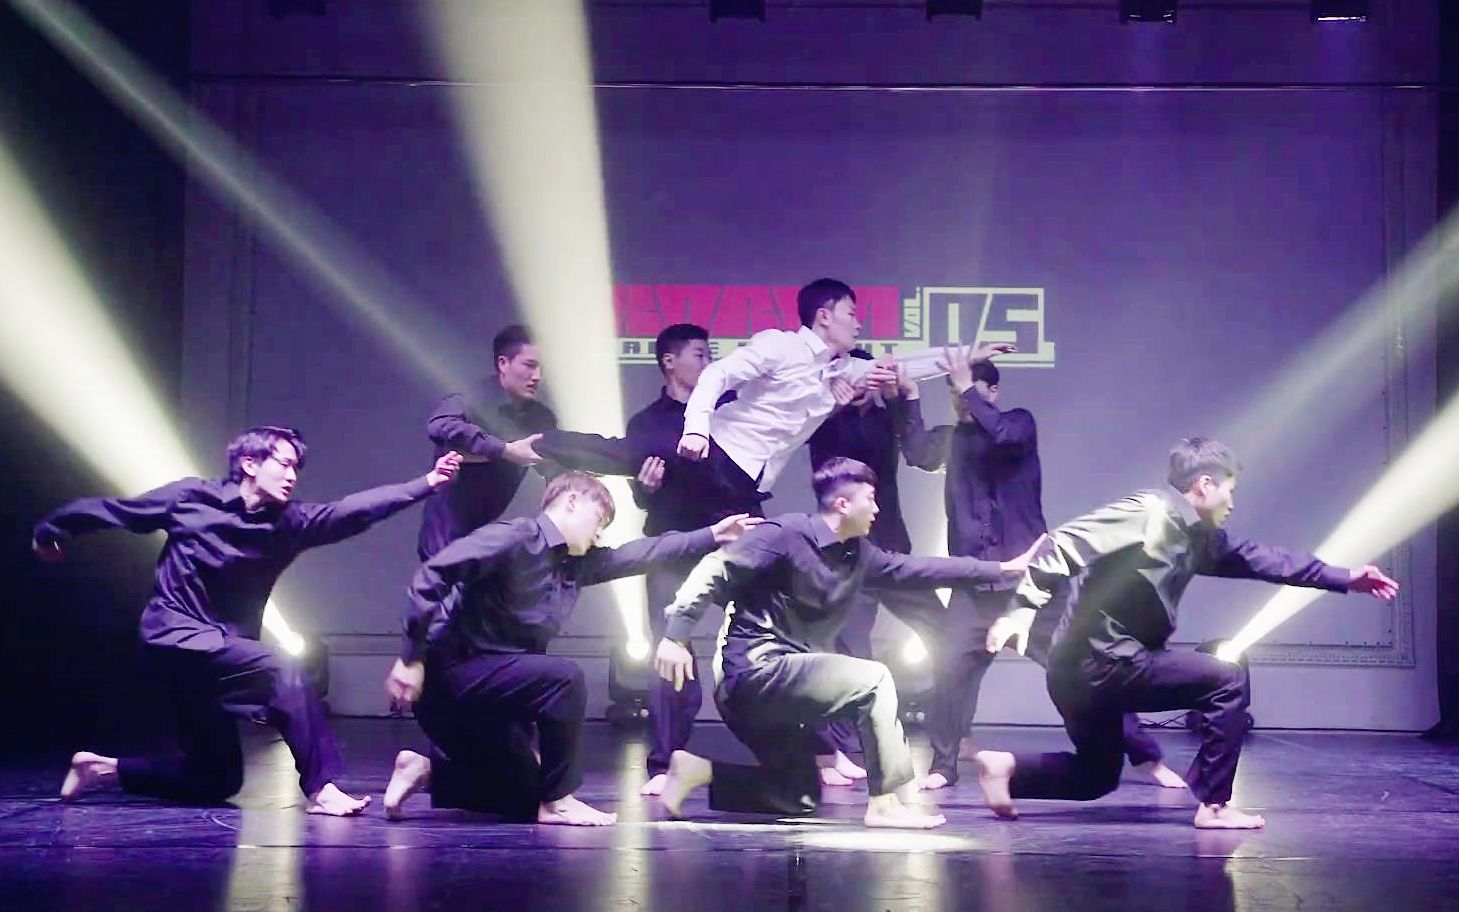 用古典音乐跳Popping？！大神Dokyun带领的舞团Emotional Line用身体演绎旋律和音符！Korea Dance Delight现场表演